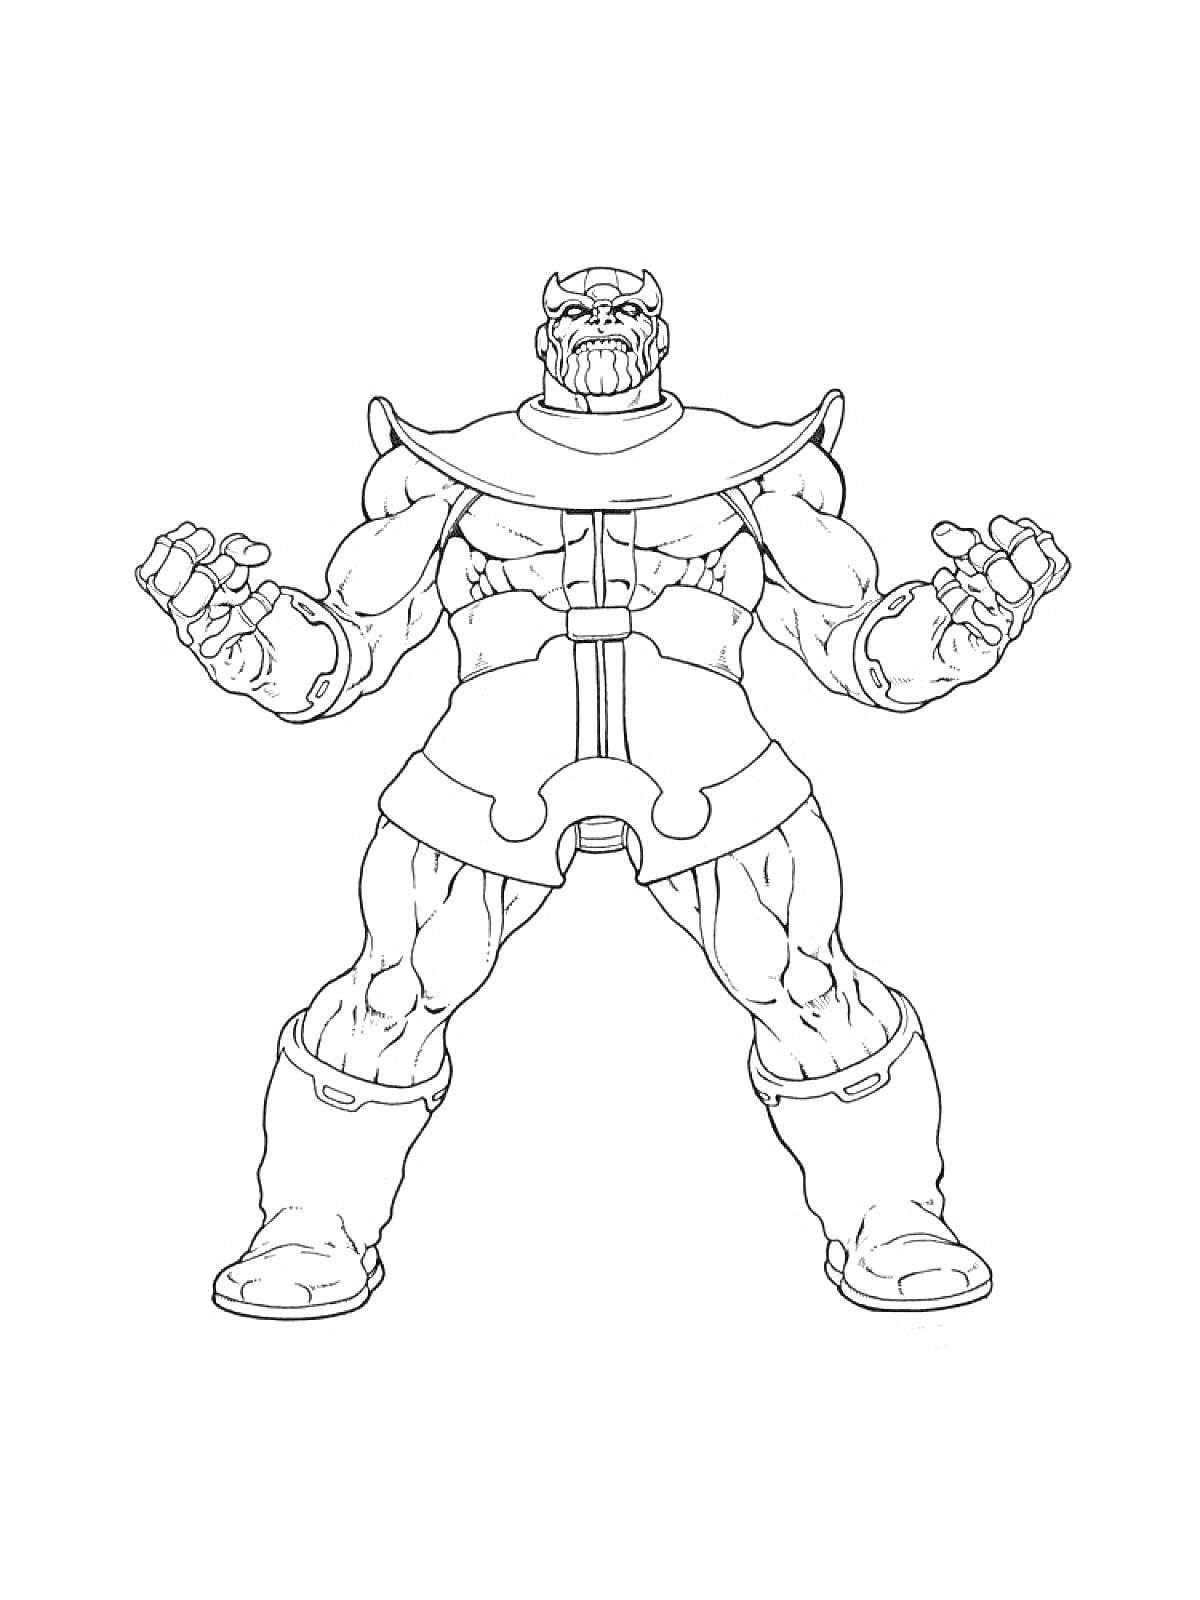 Раскраска Танос - фигура с поднятыми кулаками